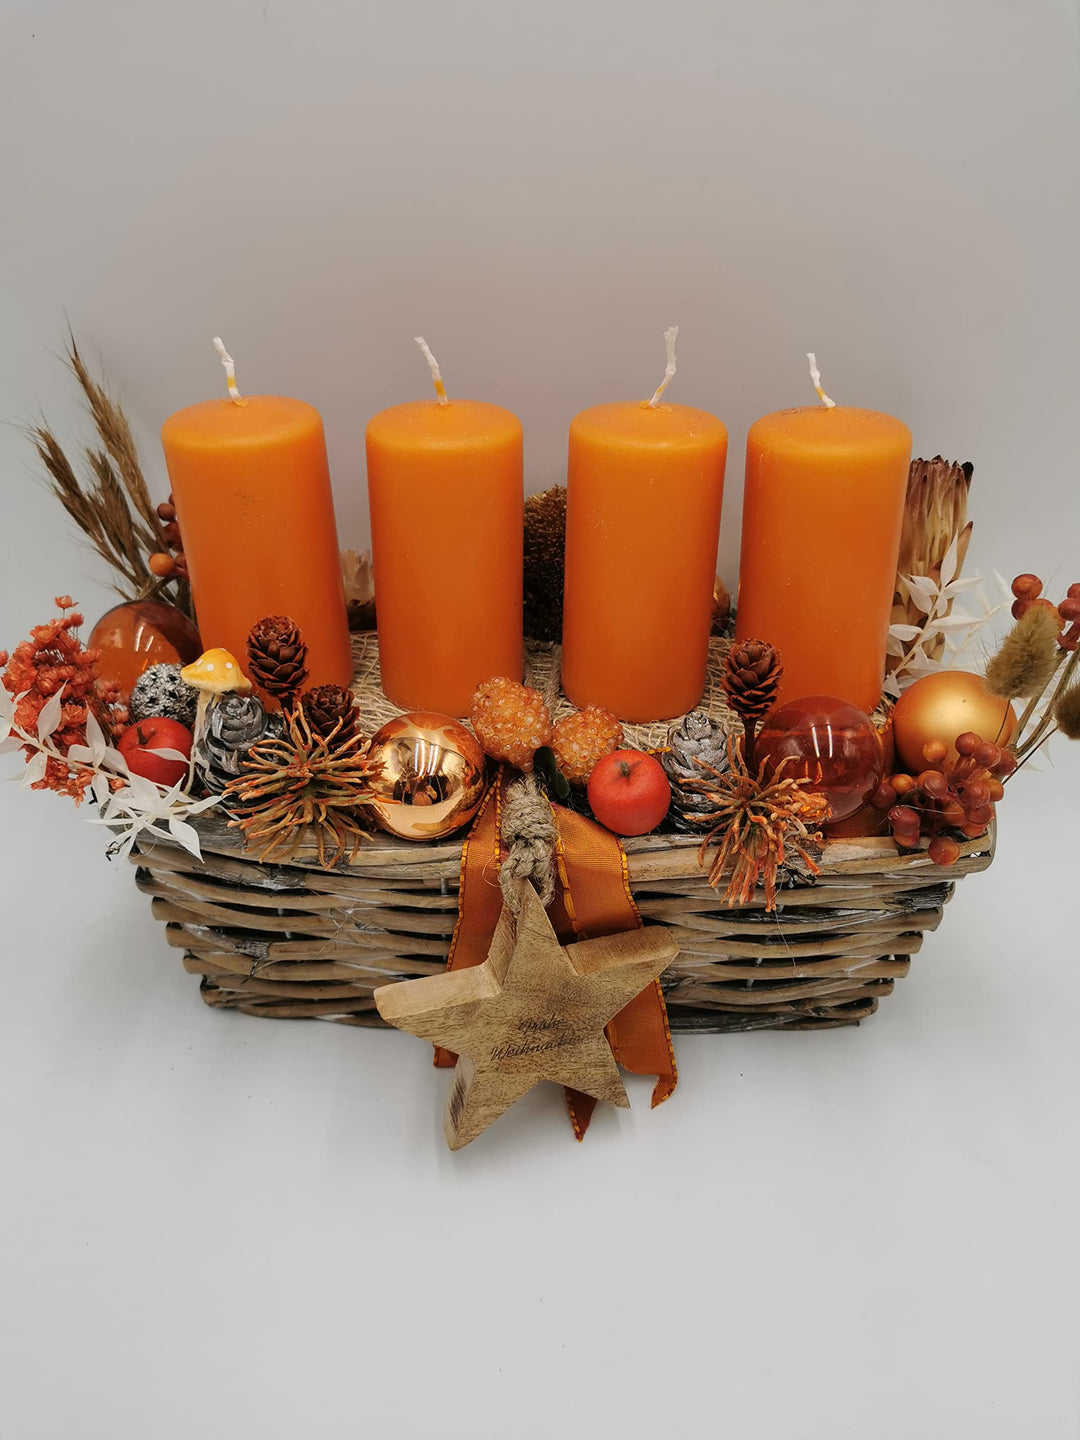 Weihnachtsgesteck Adventsgesteck Tischgesteck Kugel Schleife Stern Zapfen Kerze Beeren Gräser orange natur